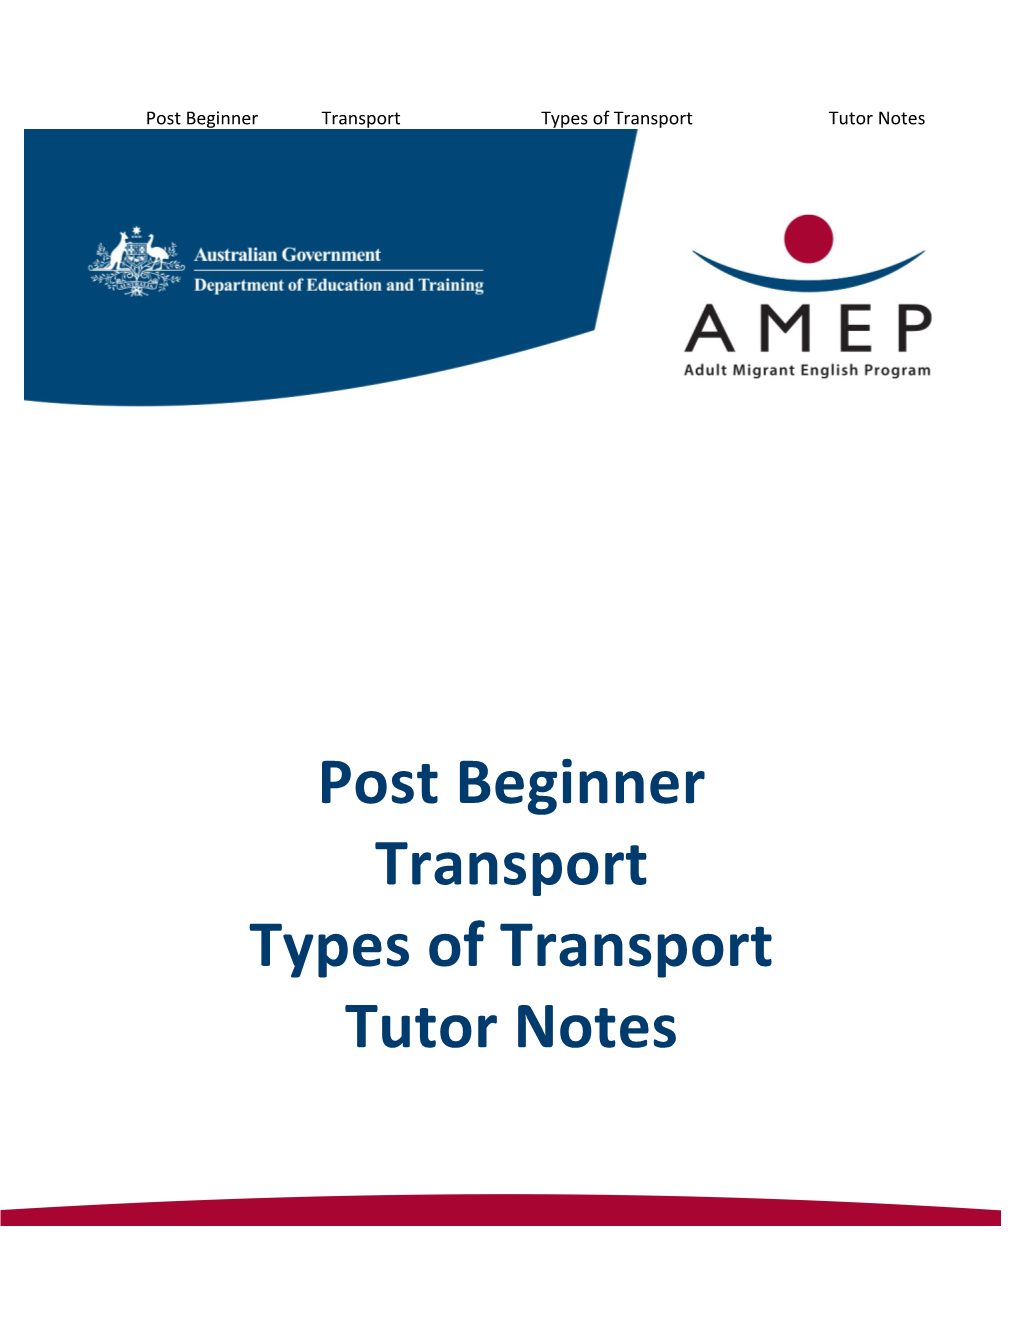 Post Beginner Transport Types of Transport Tutor Notes